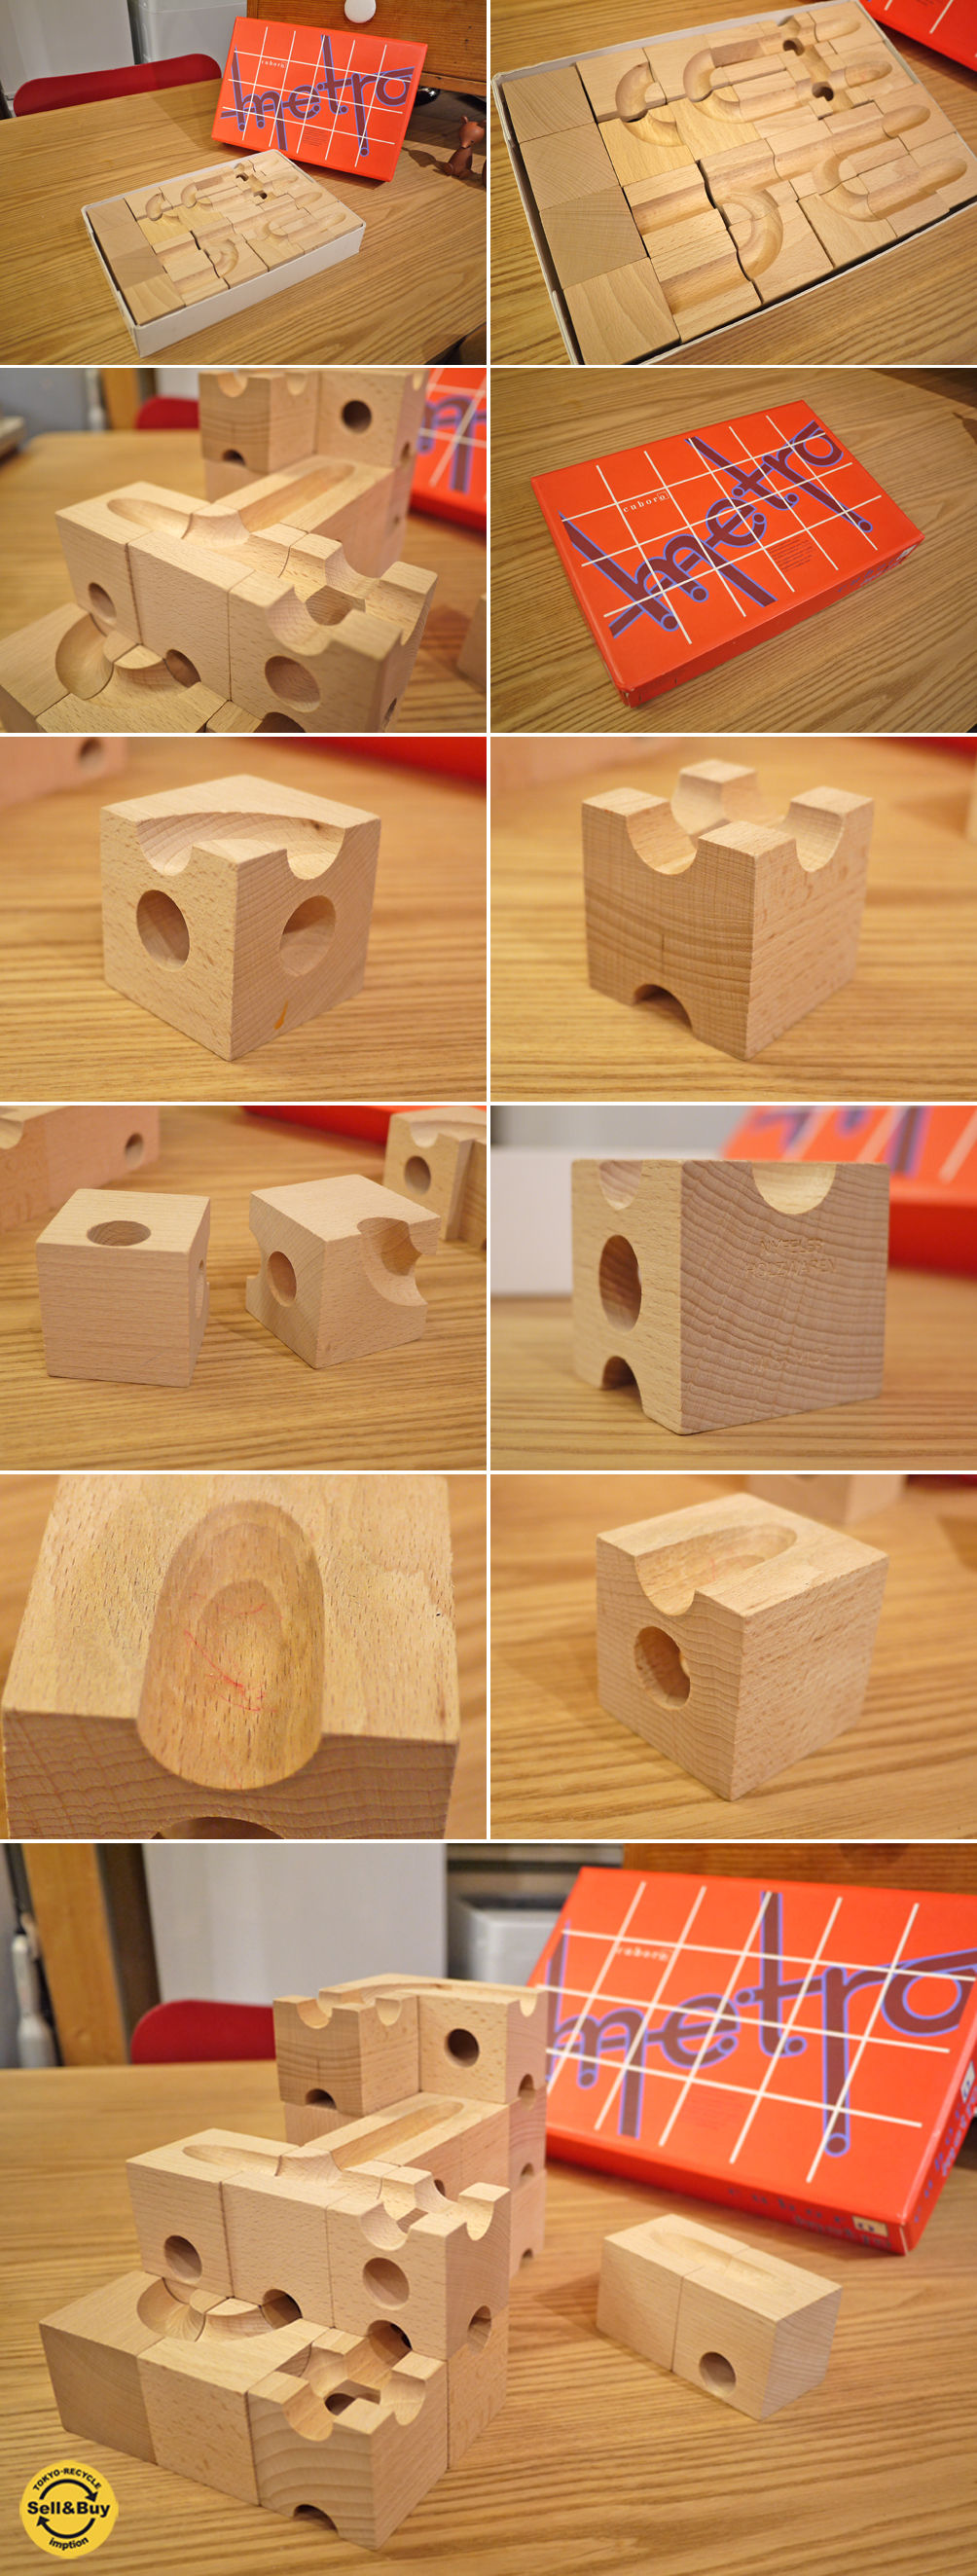 スイス製  クボロ キュボロ 社 メトロ  積み木 知育 玩具